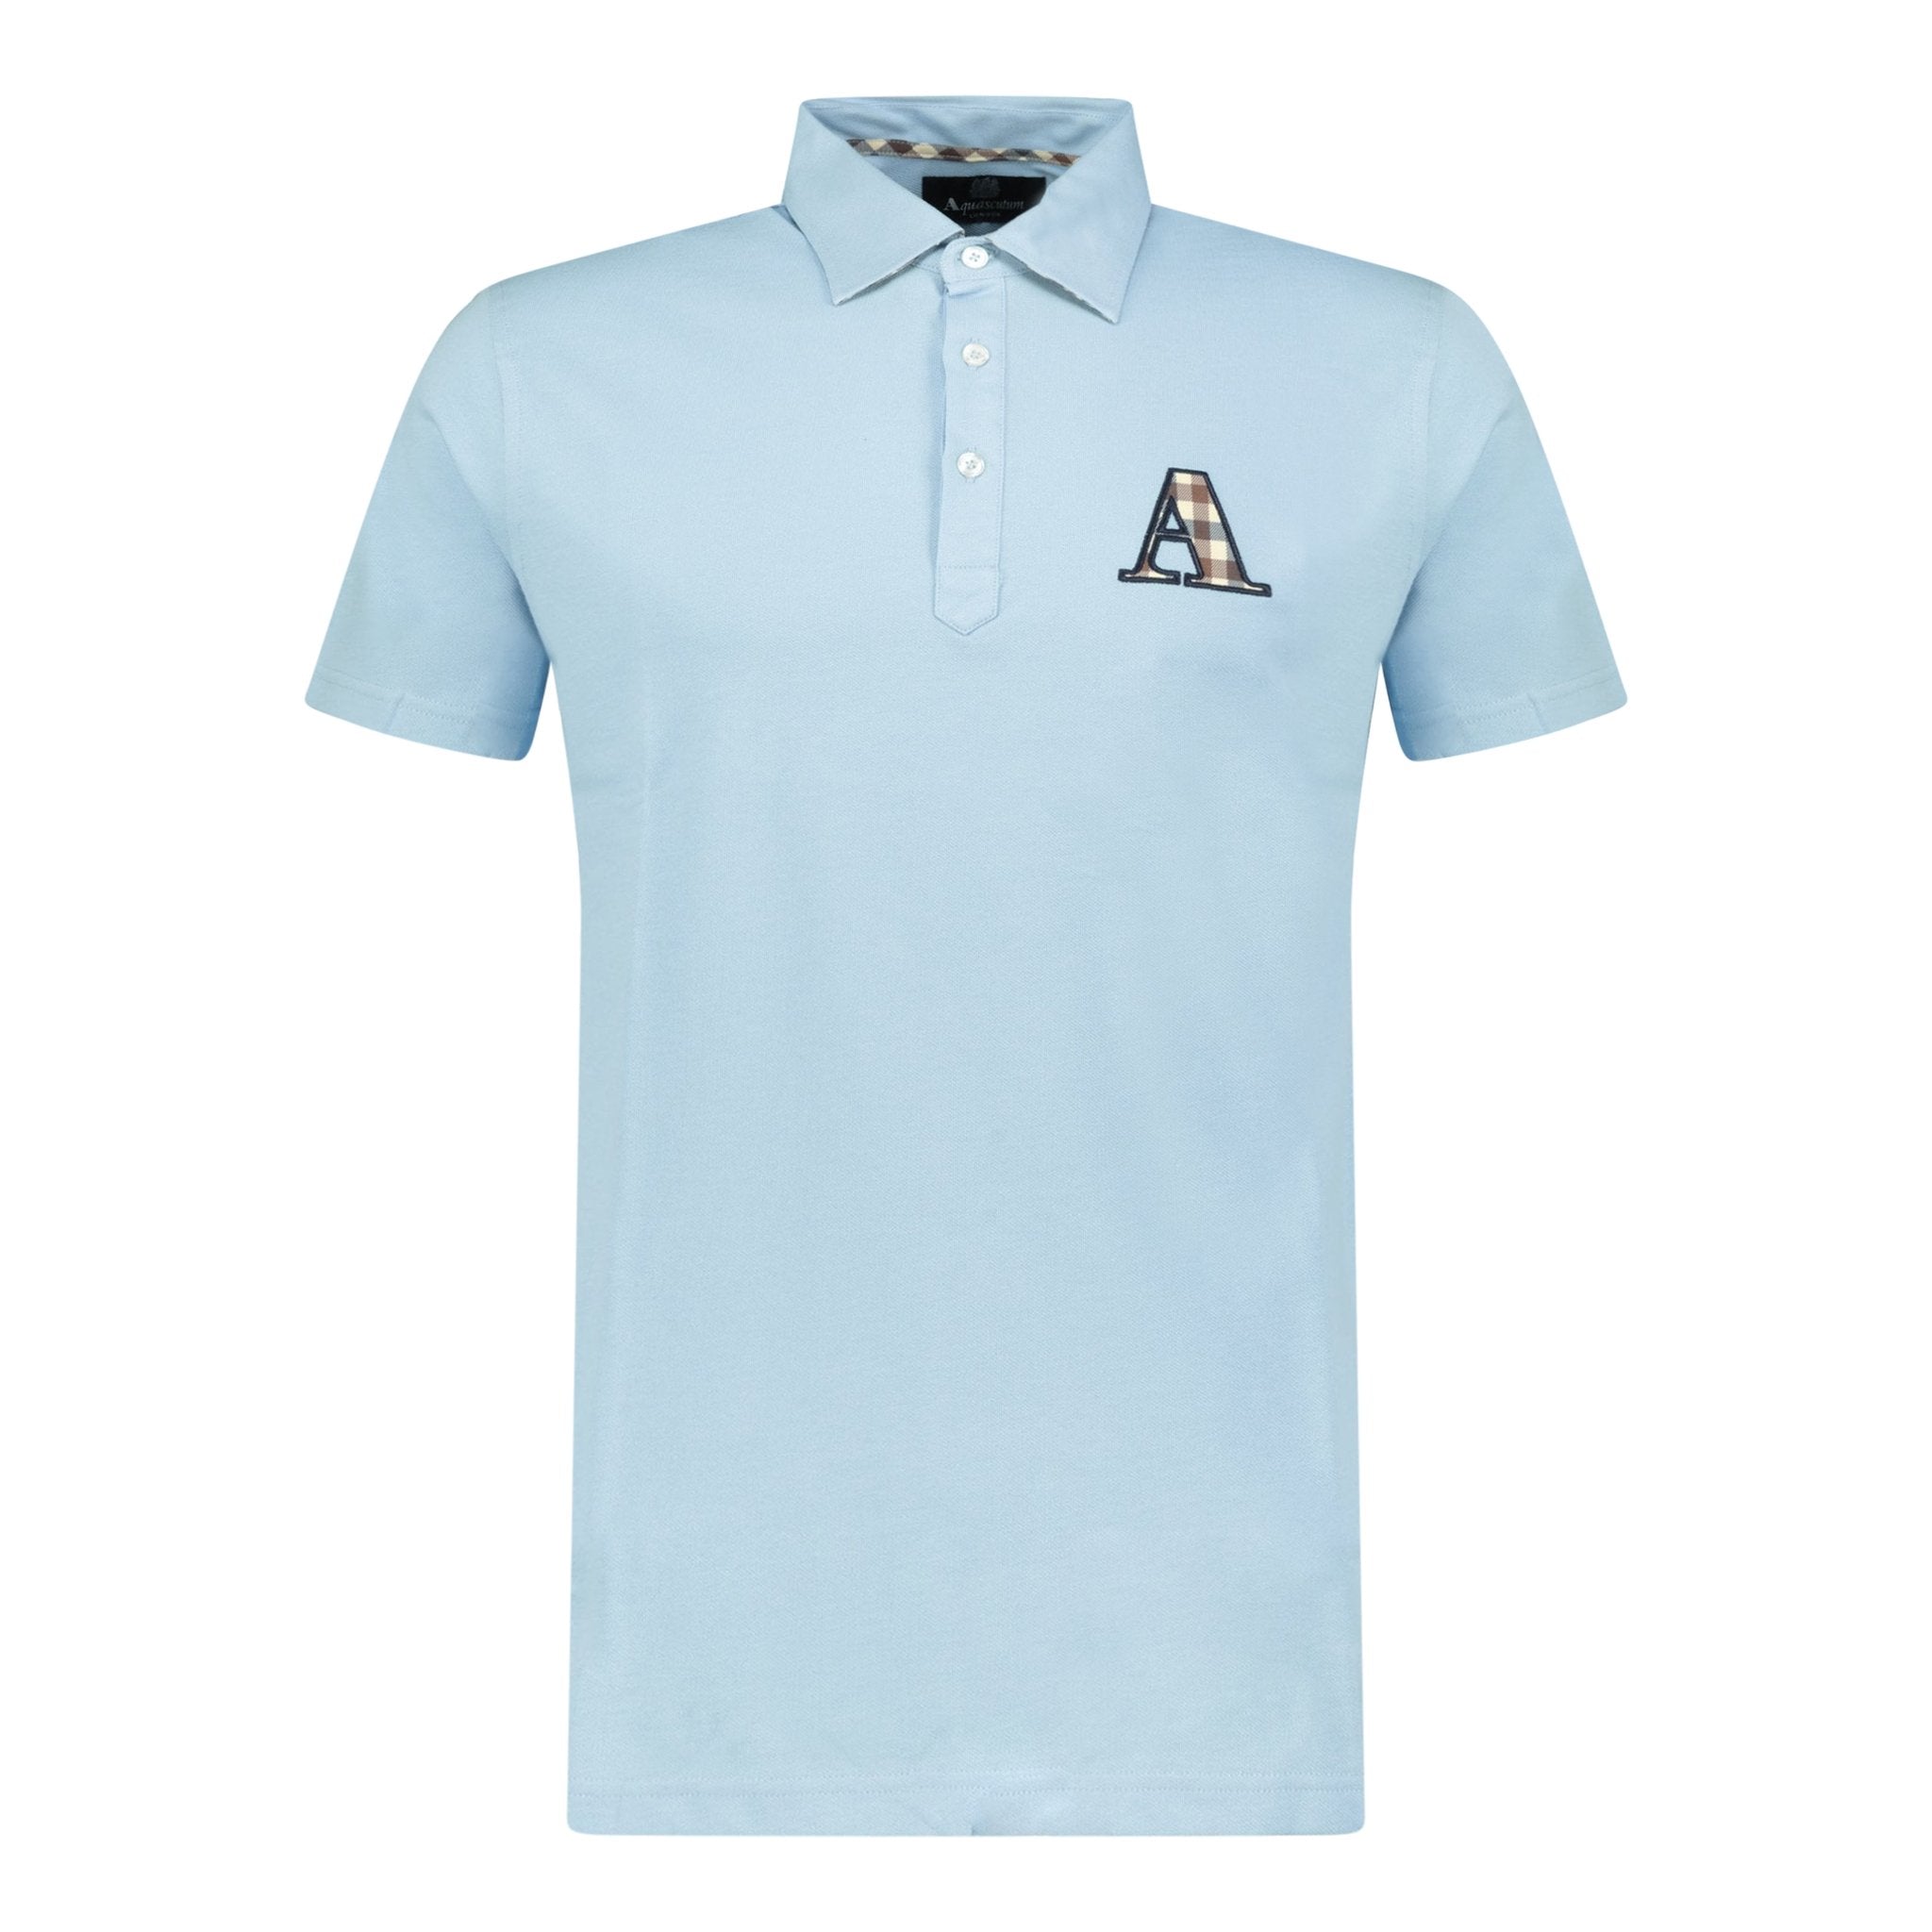 Aquascutum A Check Embroidery Logo T-Shirt Blue